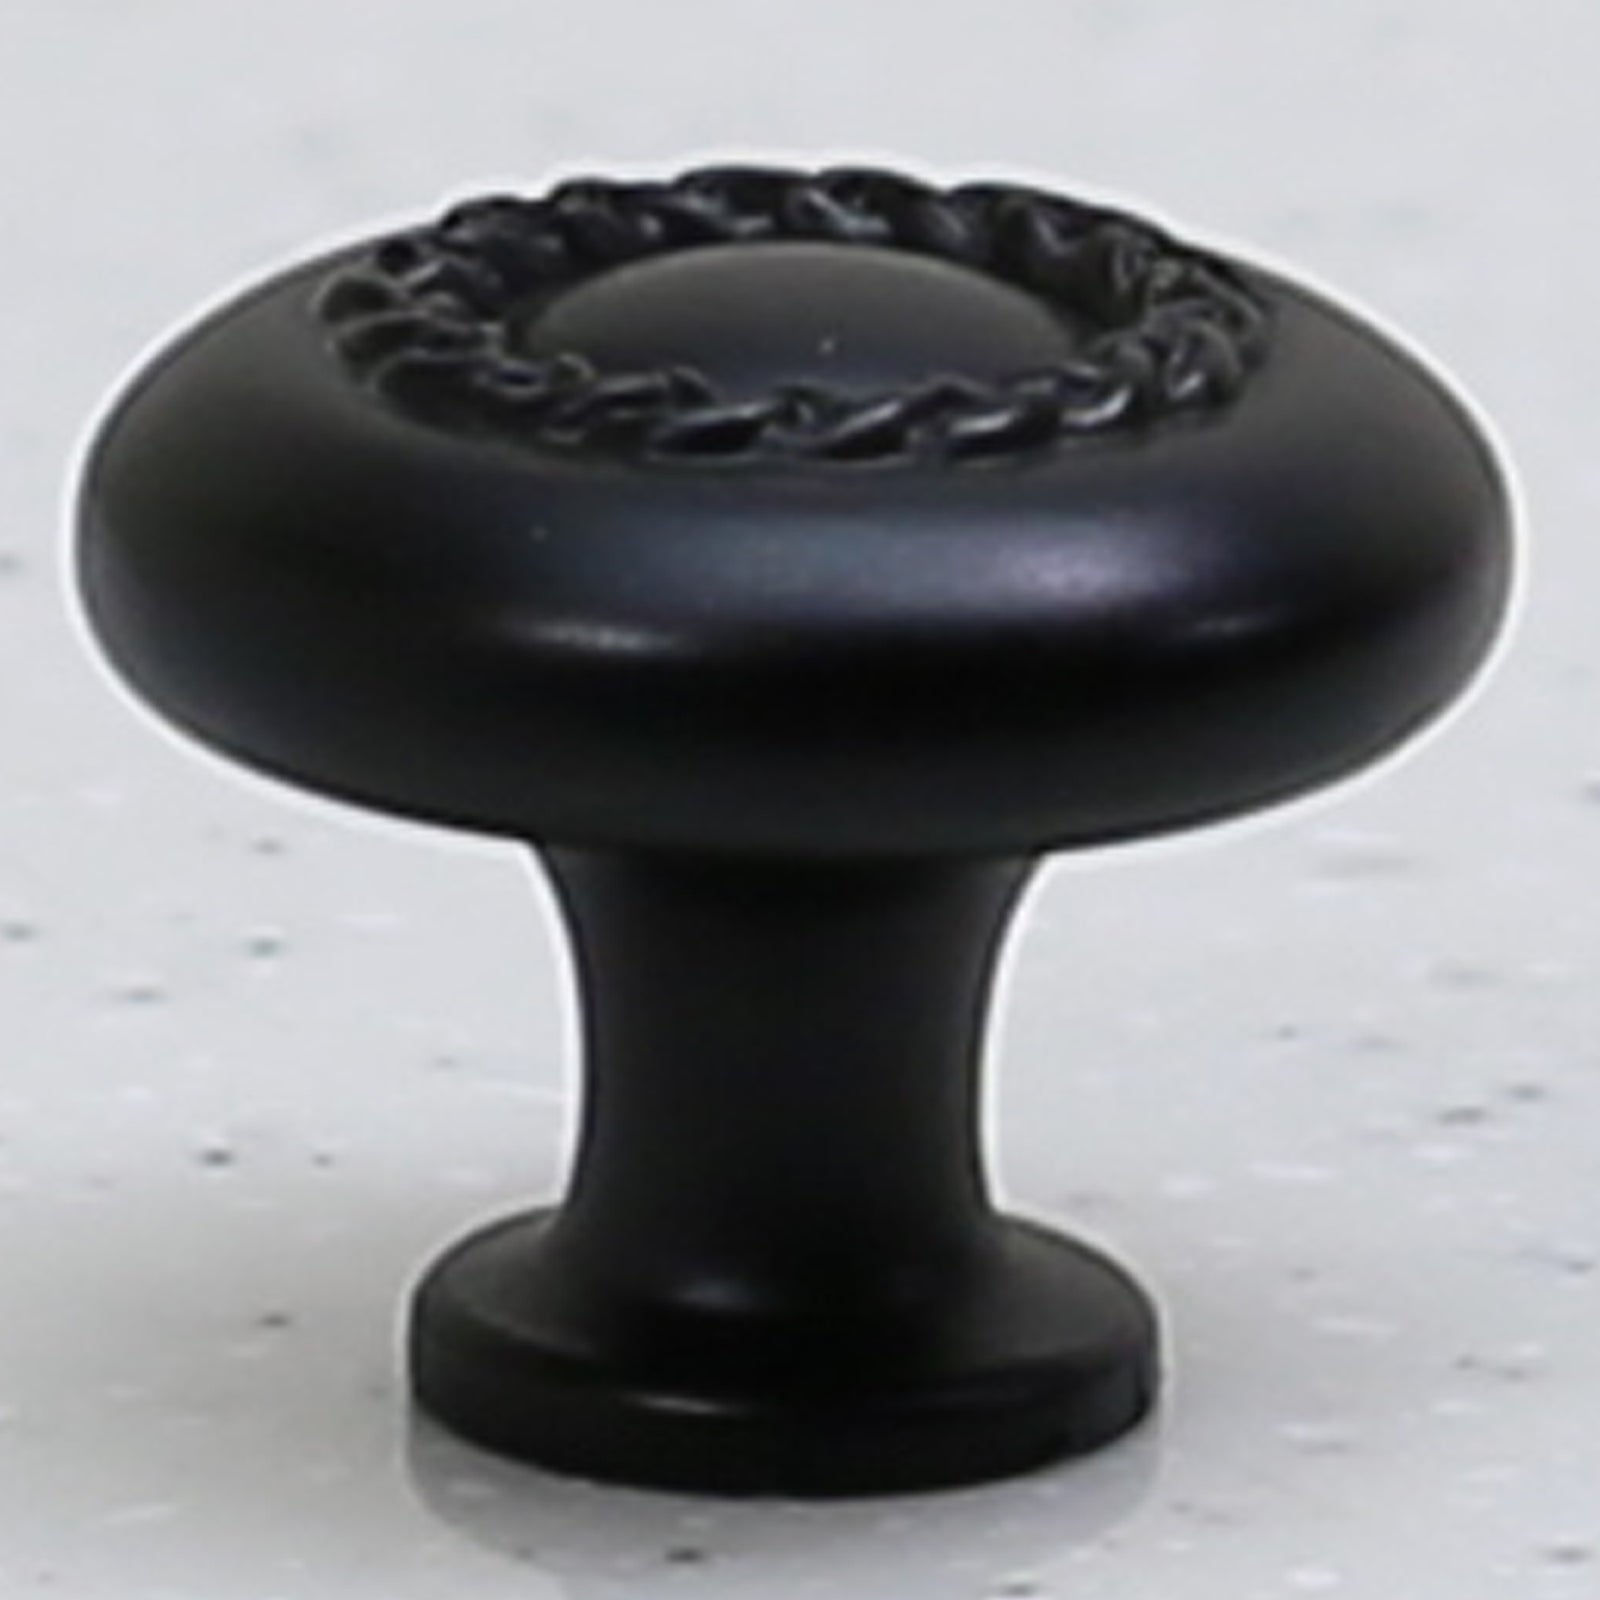 Cabinet Round Knob 1-1/4" inch Diameter, Matte Black